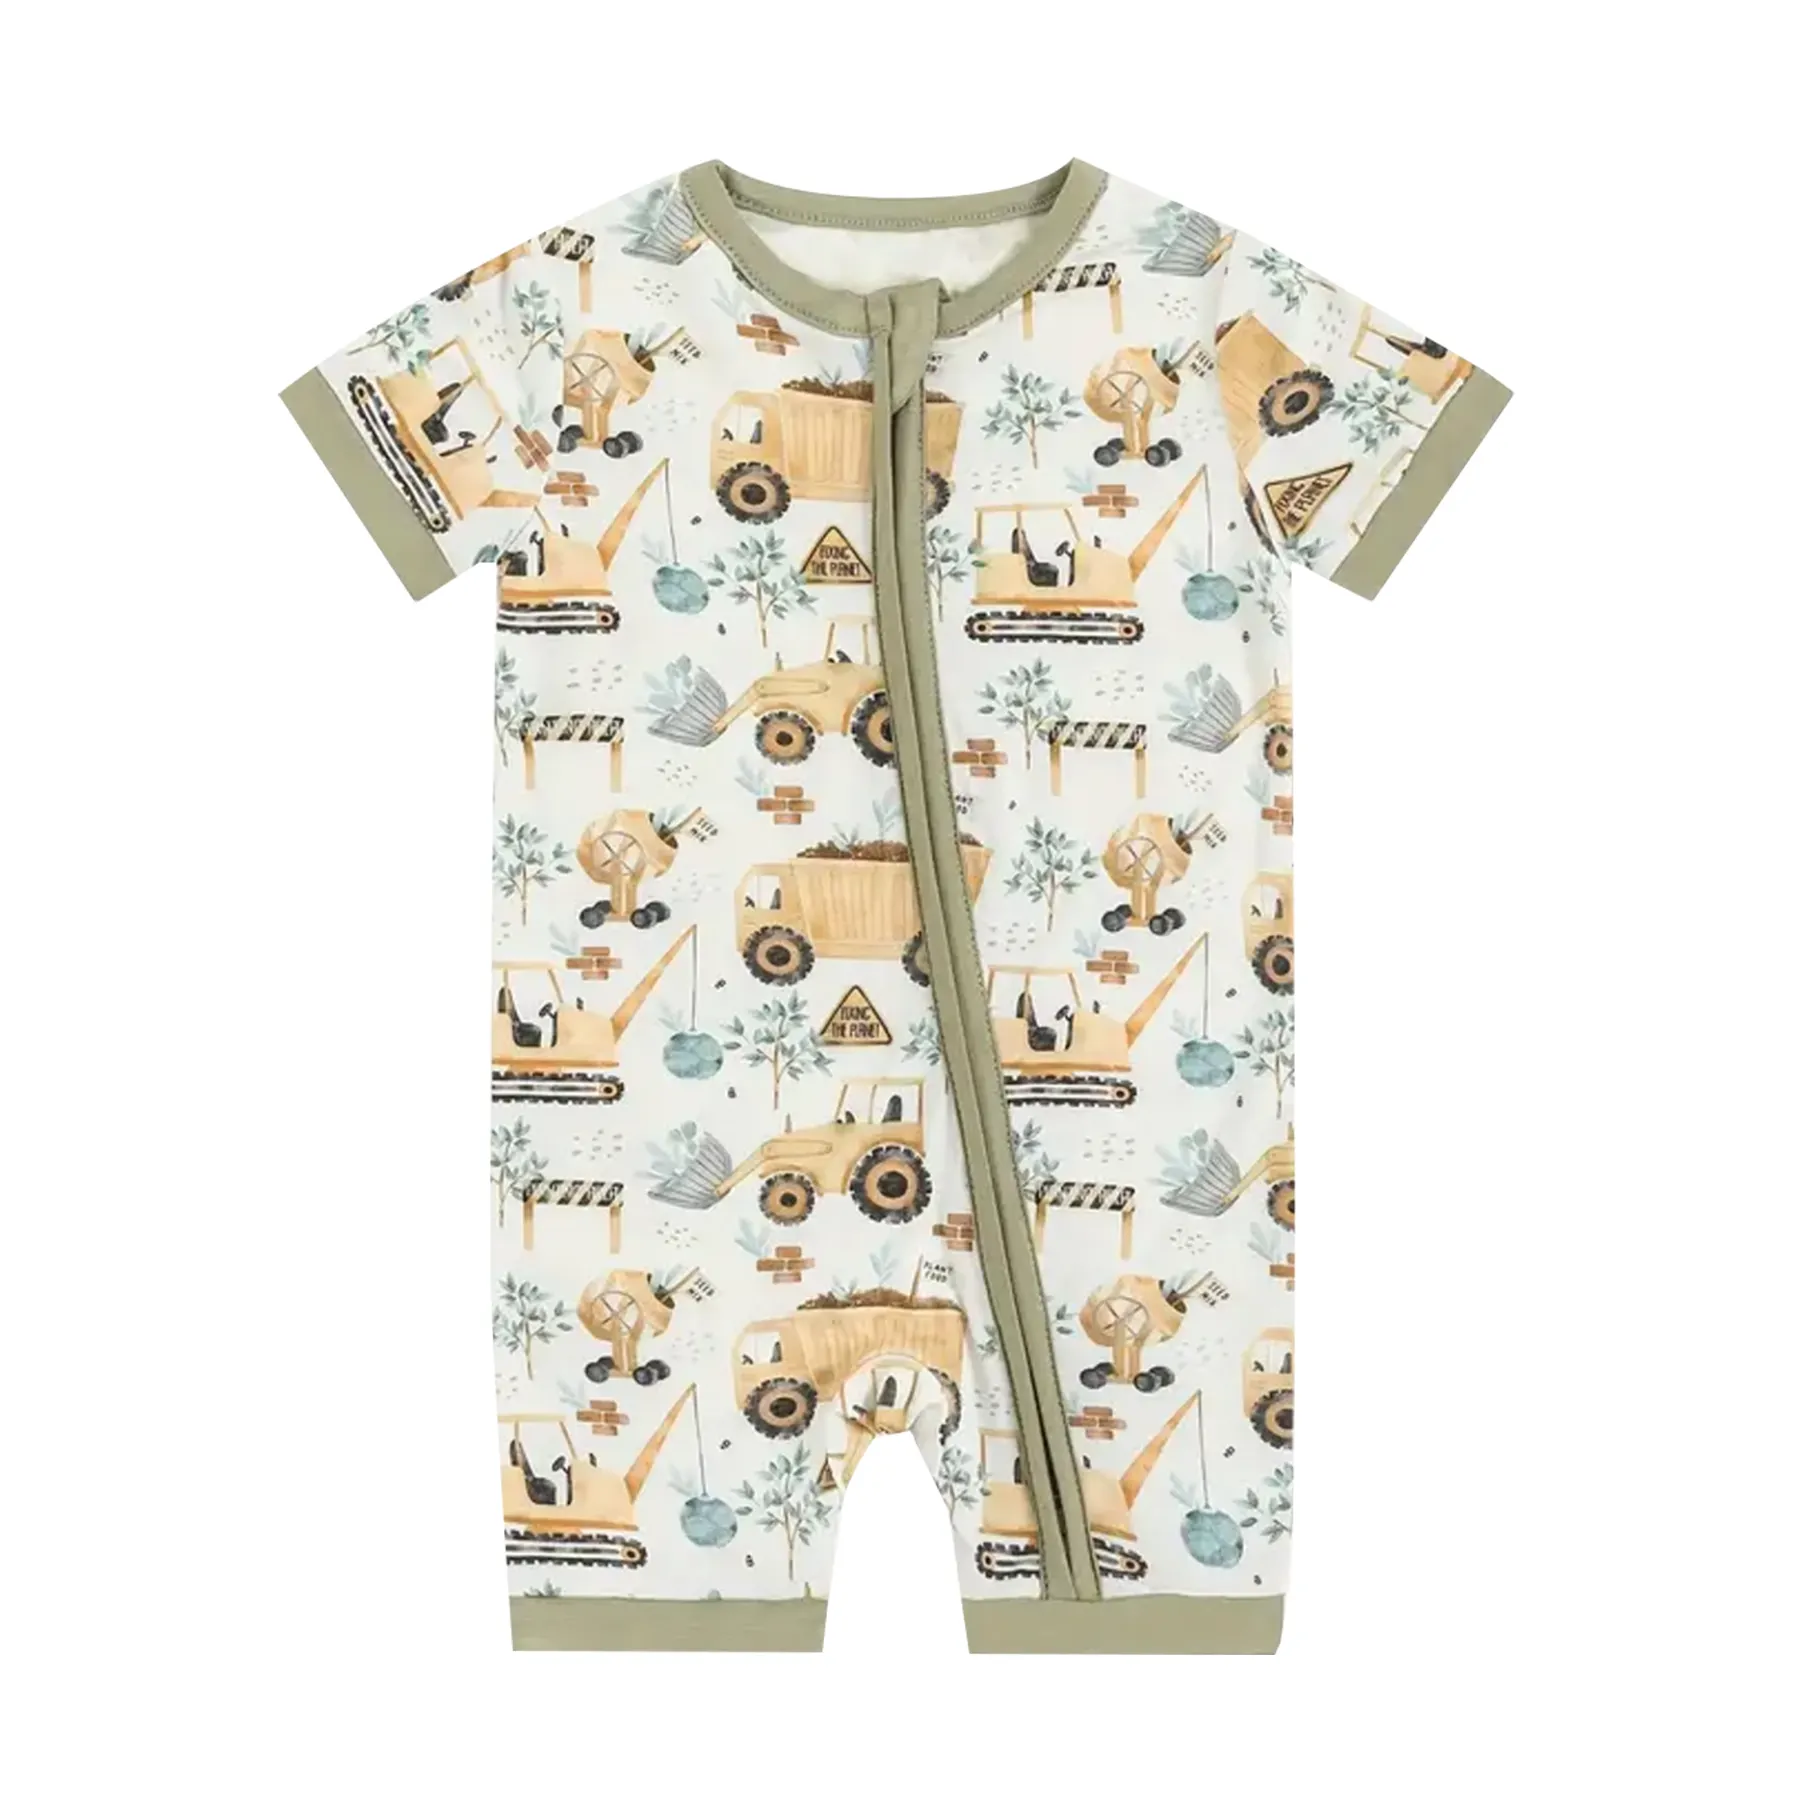 Hochwertige Bambus Baumwolle lange oder kurze Ärmel Kinder-Pjama digitaldruck gerippte Baumwolle Knopf Babypjajamas